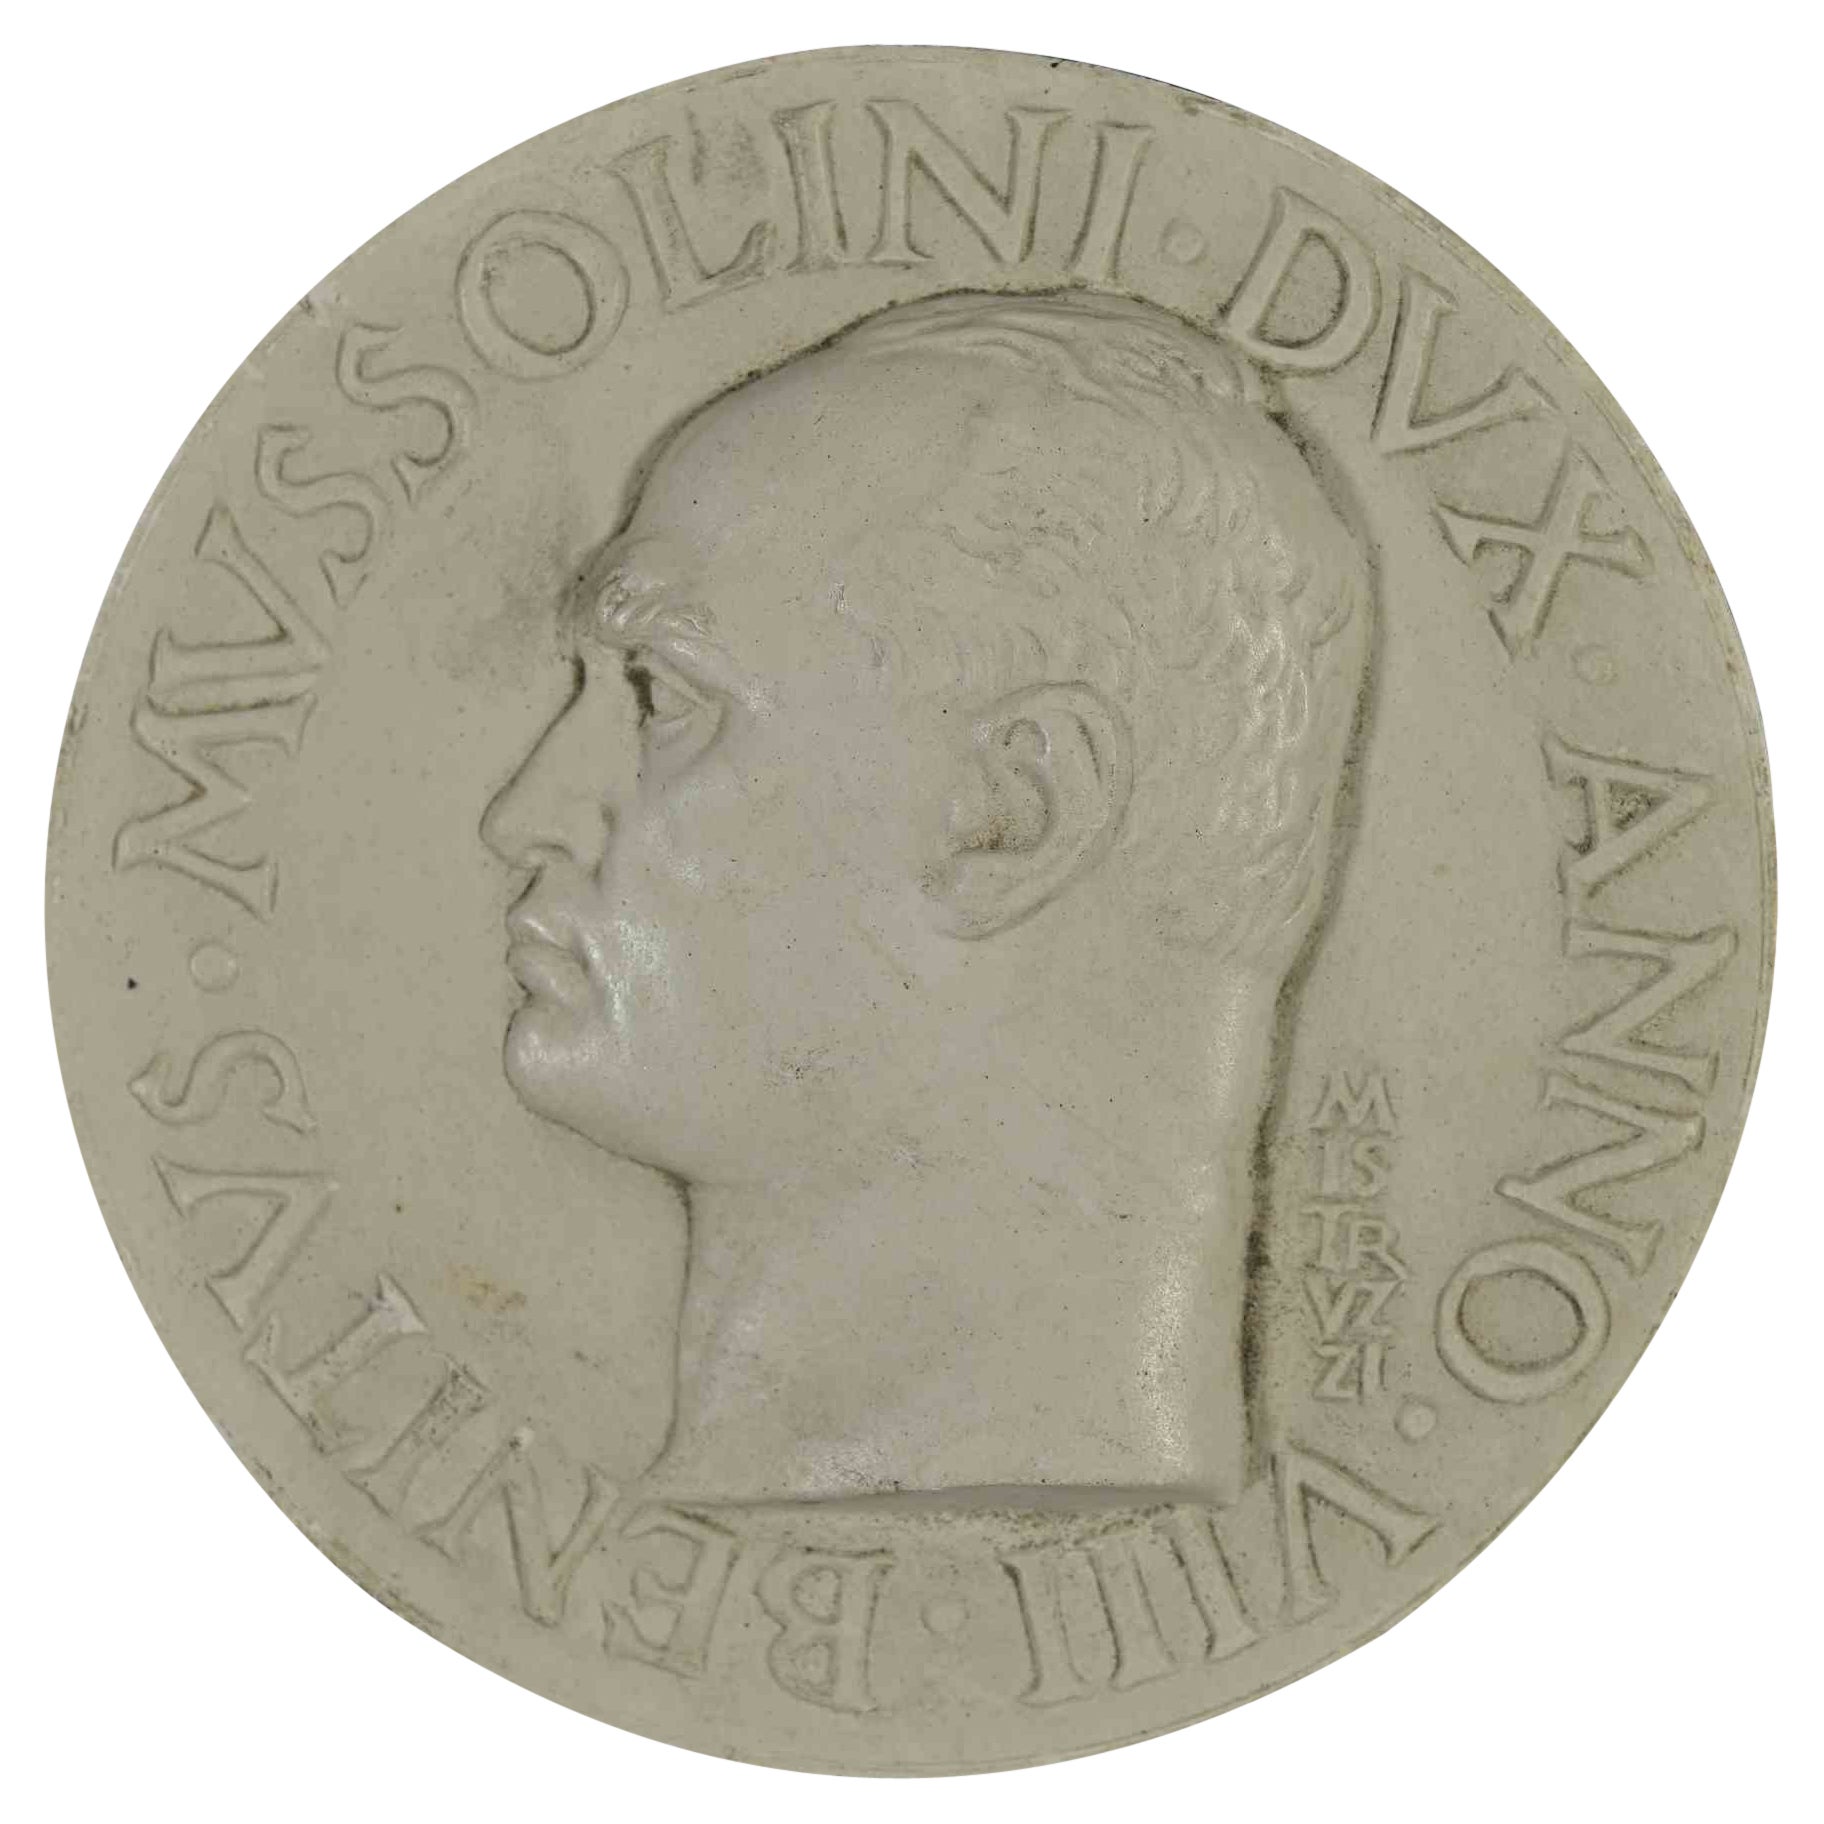 Plastelmedaille von Mussolini von Aurelio Mistruzzi, 1930er-Jahre